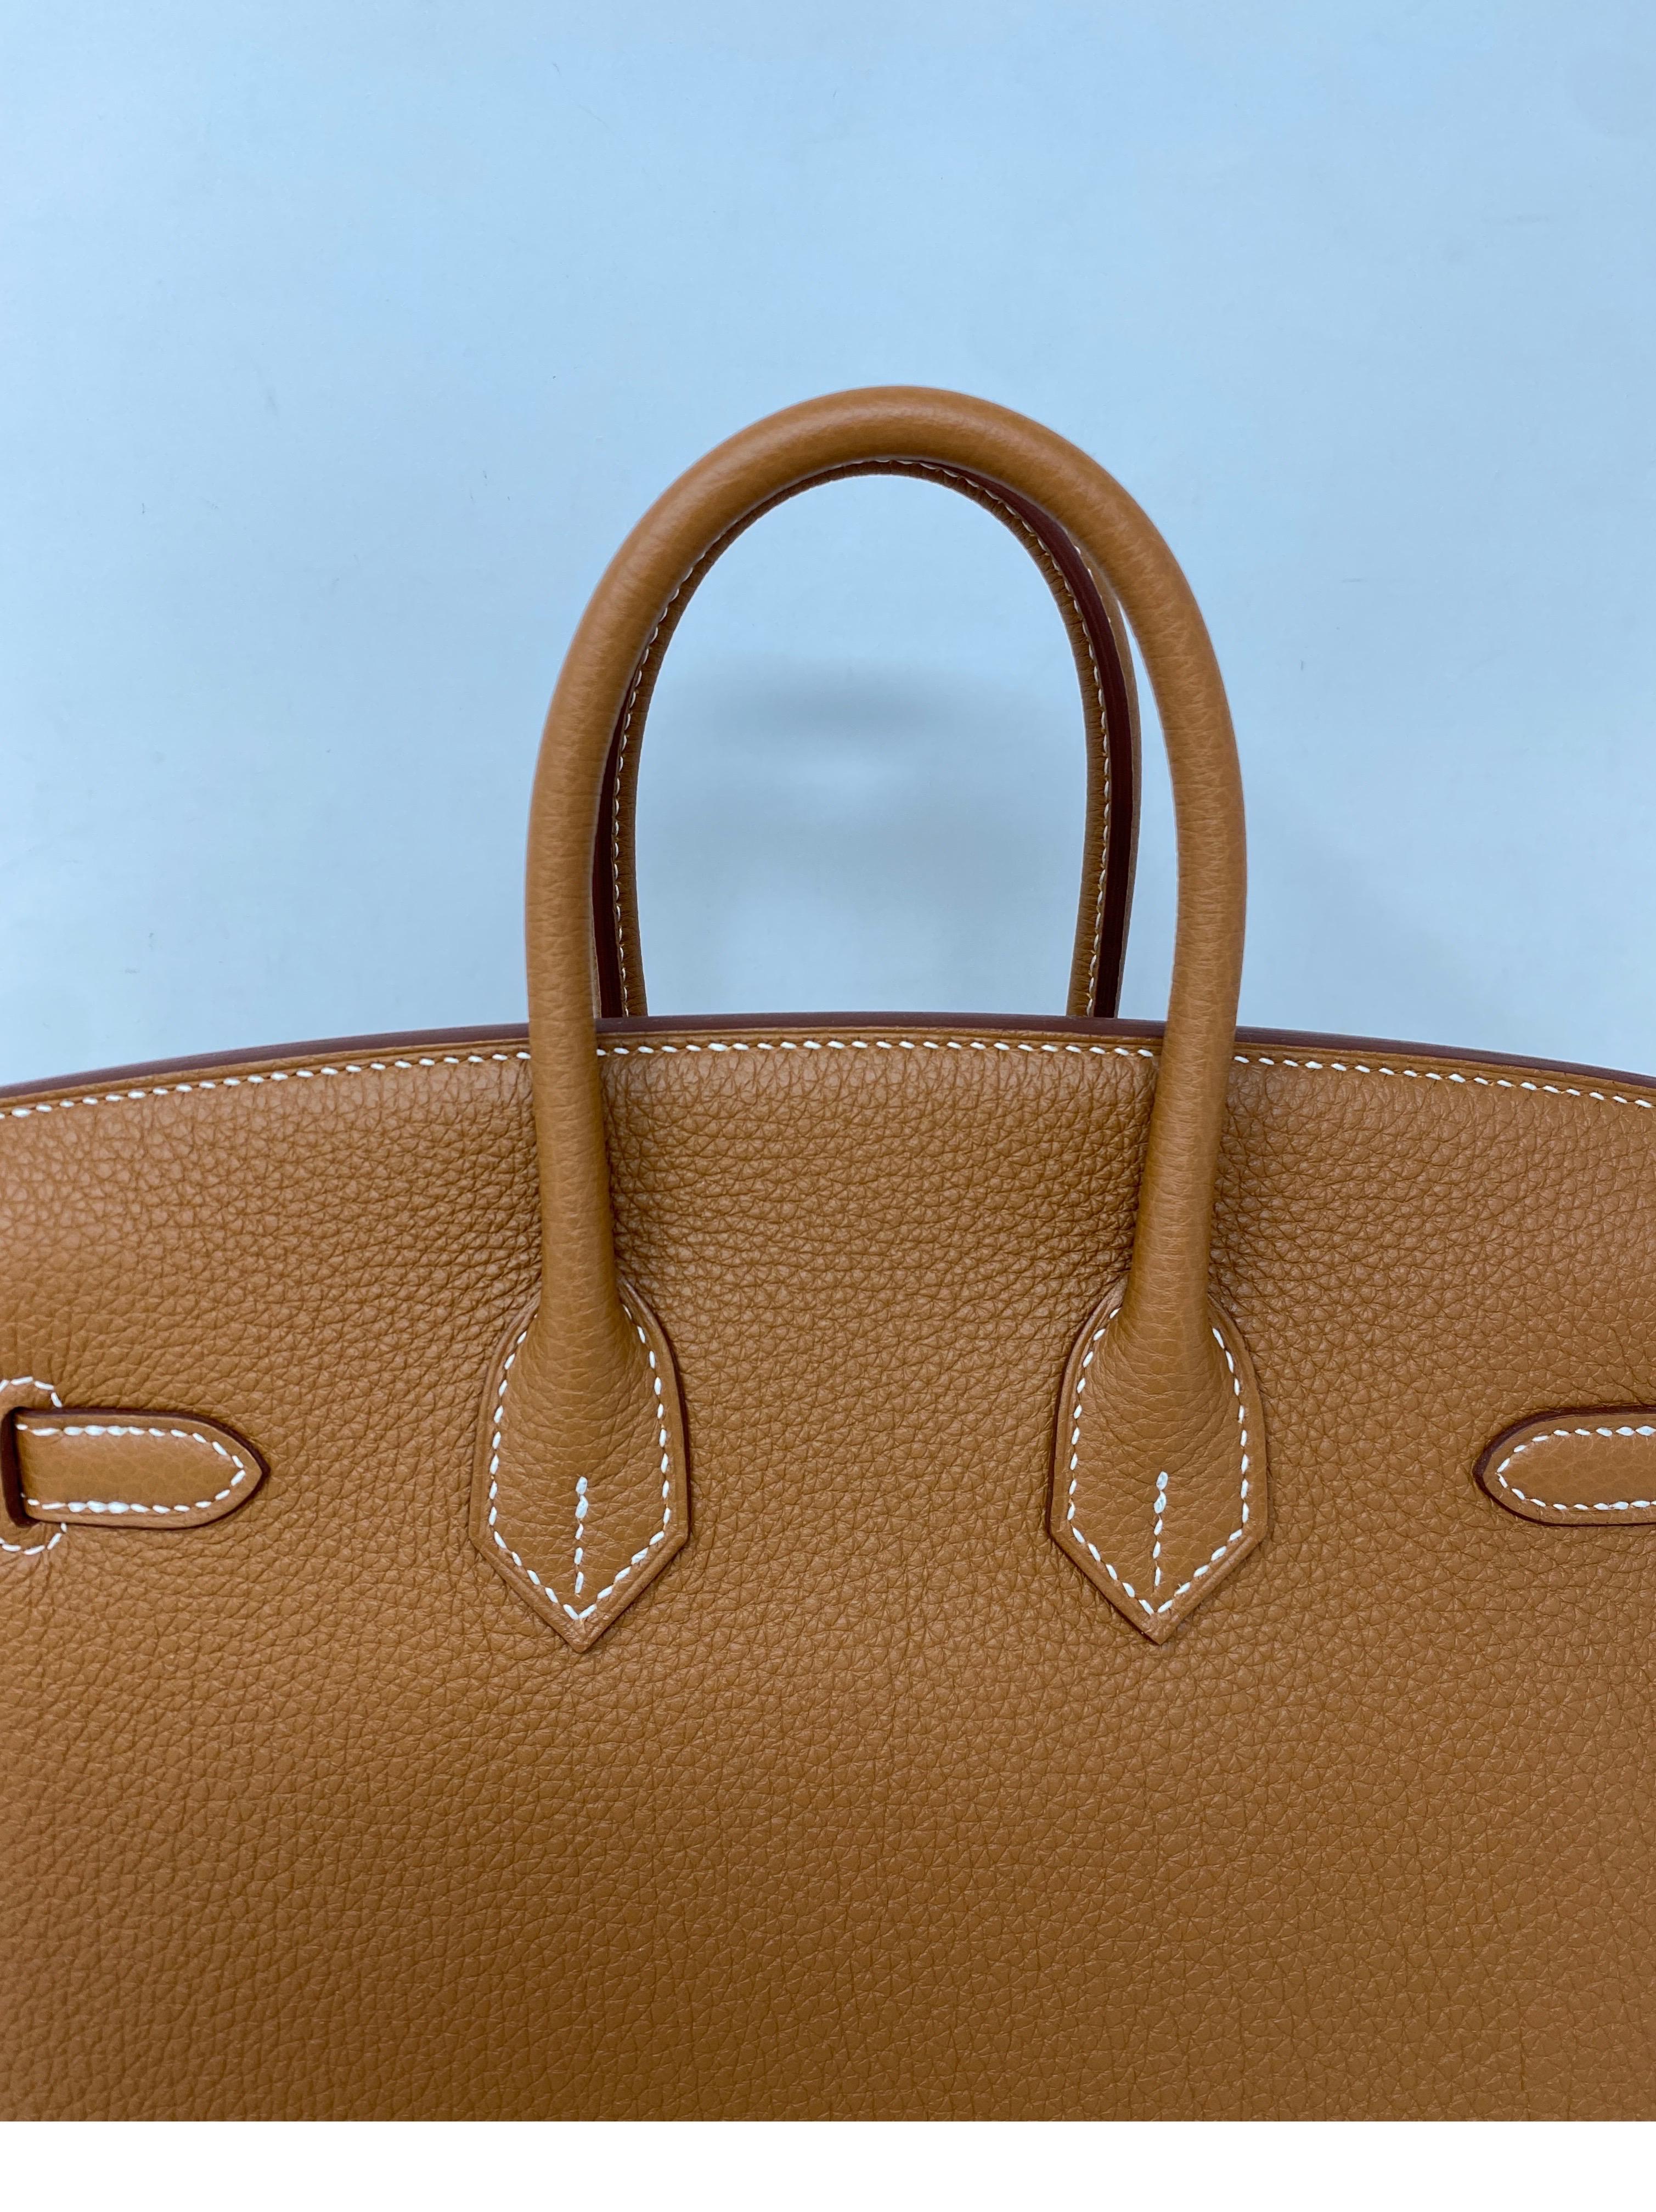 Women's or Men's Hermes Gold Birkin 25 Bag 